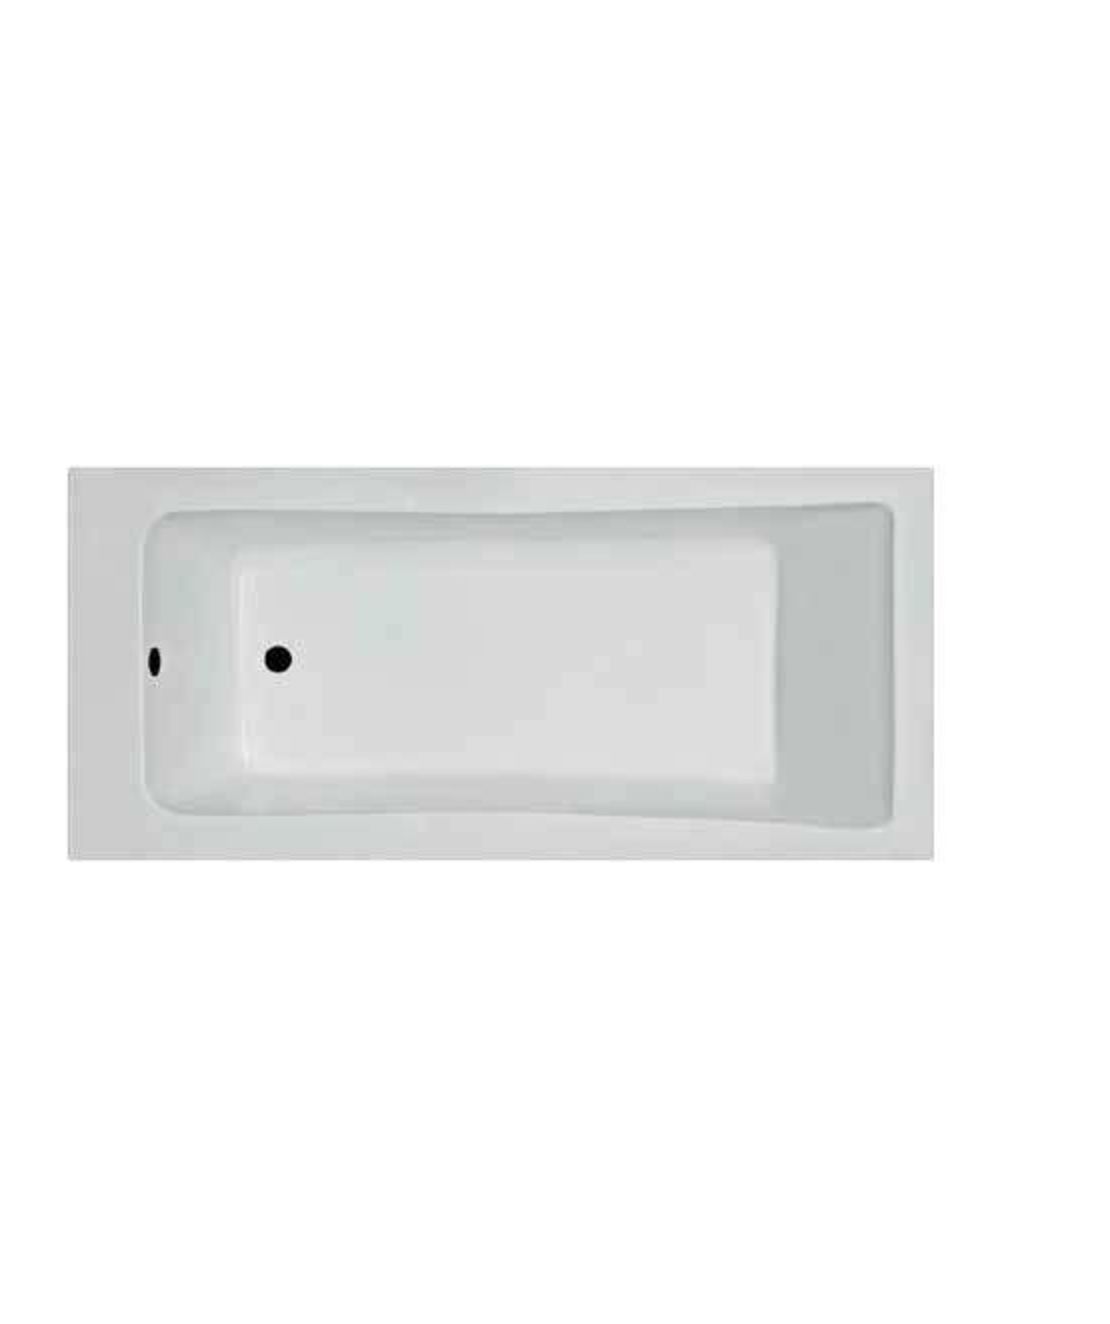 ע- אמבטיה אקרילית לבנה 170 * 70 דגם אוריון פרופילון PR468070